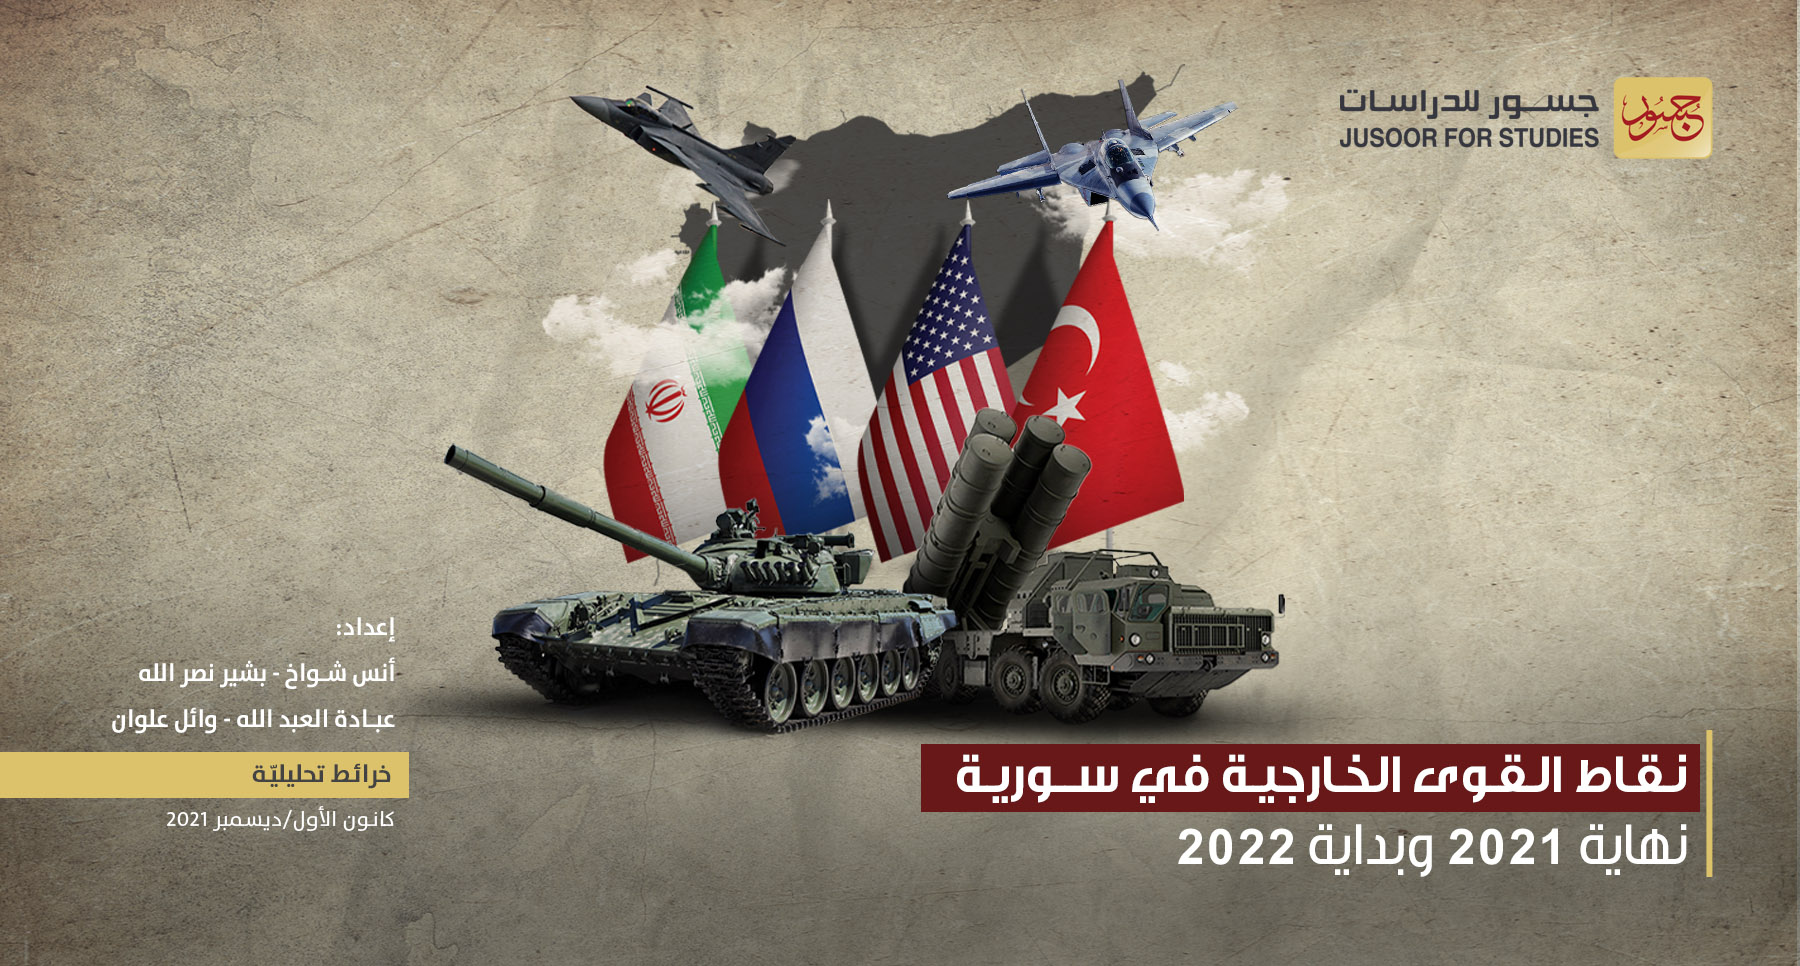 نقاط القوى الخارجيَّة في سورية نهاية 2021 وبداية 2022